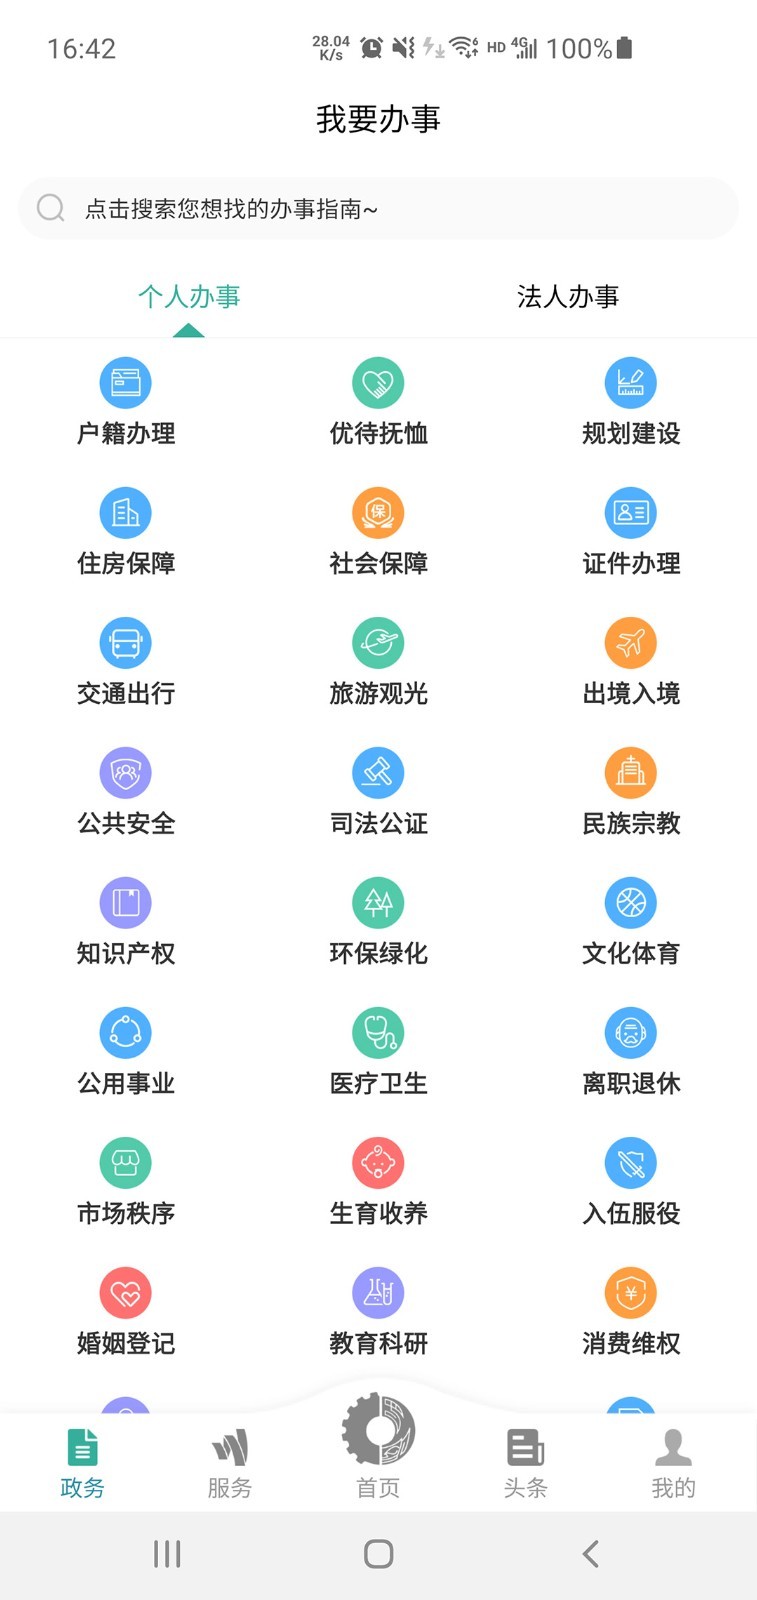 德阳市民通南昌app软件如何开发